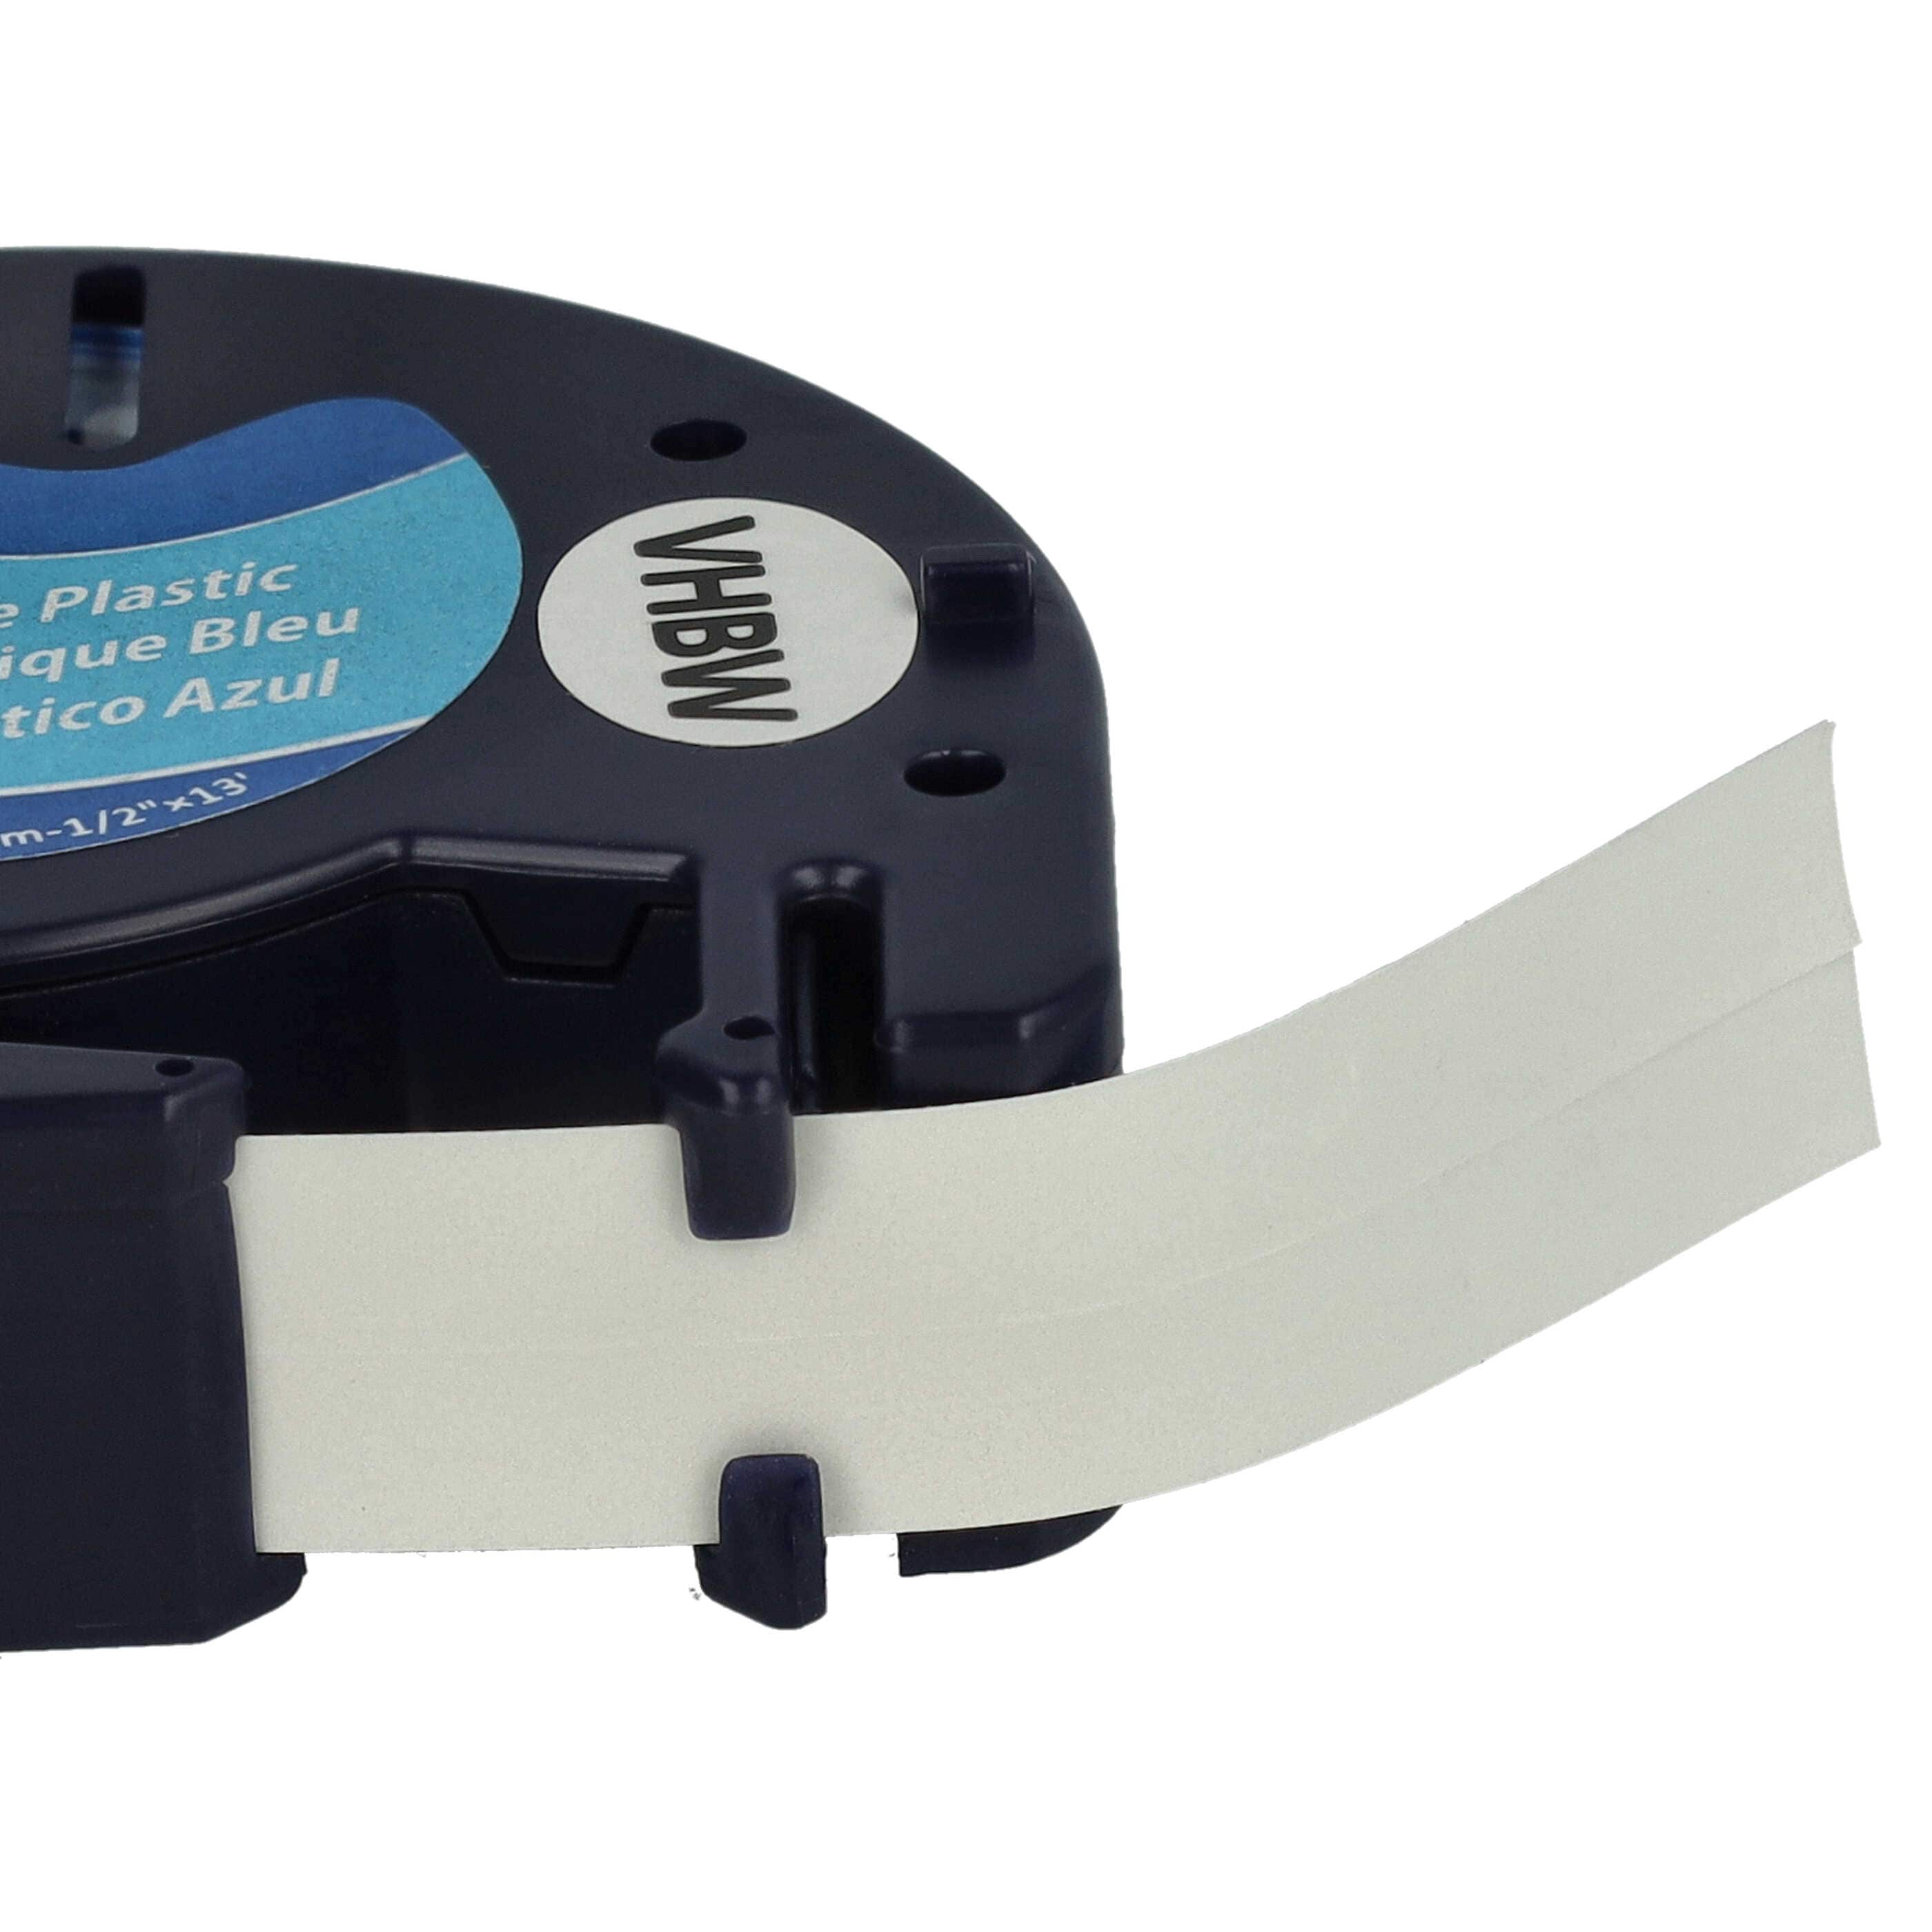 Cassetta nastro plastica sostituisce Dymo 91225, S0721650 per etichettatrice Dymo 12mm nero su blu, plastica